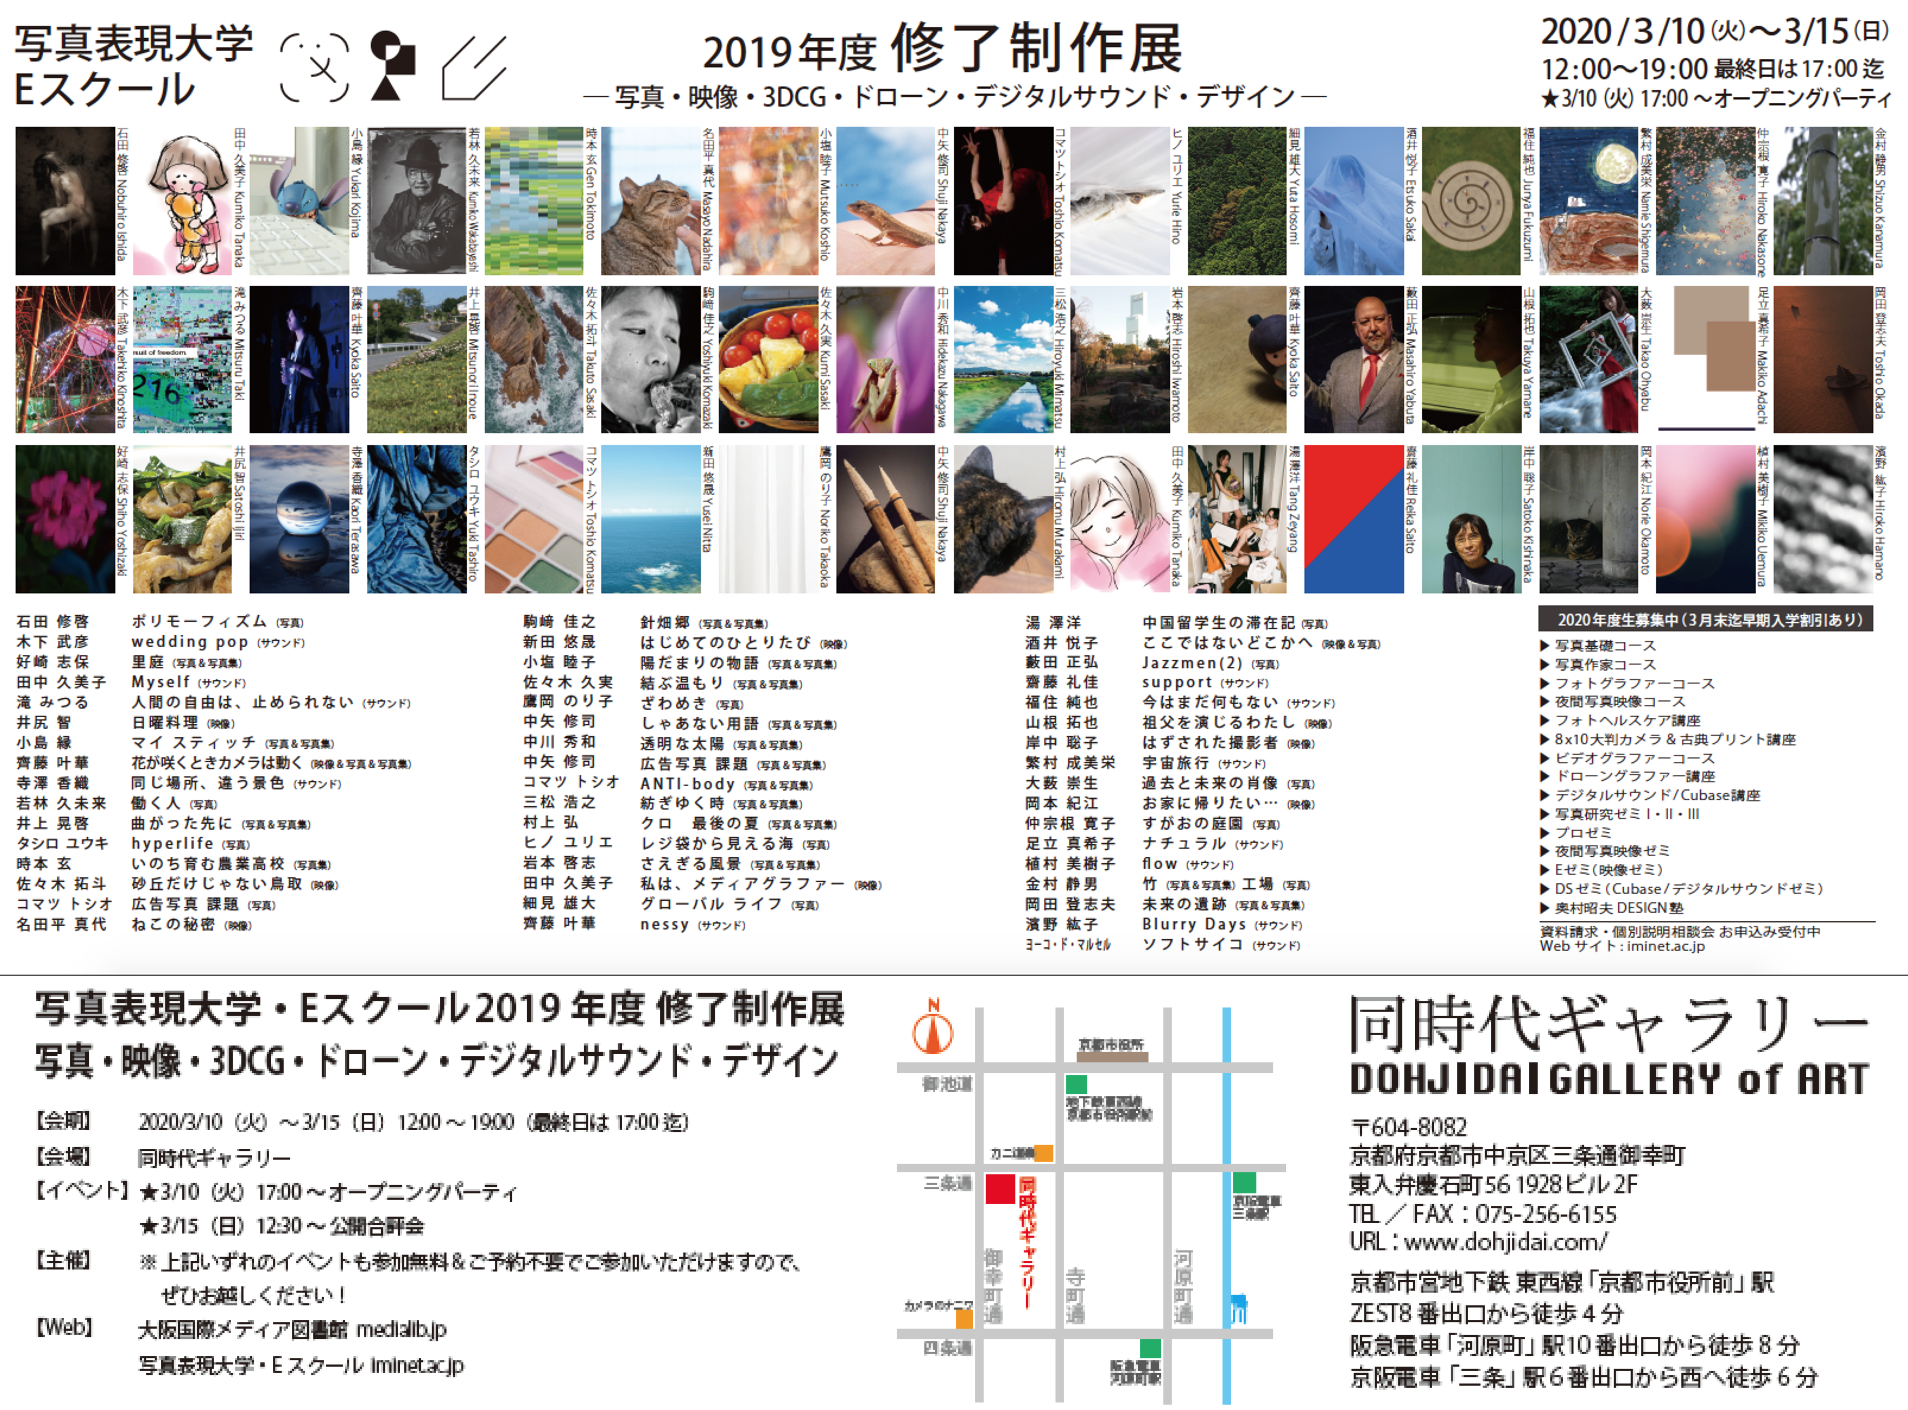 京都の同時代ギャラリーにて、「写真表現大学・Eスクール 2019年度 修了制作展」を開催します。当館が運営する写真表現大学・Eスクールでは、さまざまなバックグラウンドを持つ幅広い年齢層（社会人・シニア・大学生・高校生）の受講生たちが、写真・映像・3DCG・ドローン・デジタルサウンド・デザインを当校の独自カリキュラム（芸術系大学・大学院レベル）で学んでいます。会場では、芸術系大学4年分の内容を1年で集中して学んだ1年目の受講生たちの作品と、芸術系大学院レベルの内容で2年目以降も継続して学んでいるゼミ生たちの作品を展示します。それぞれの受講生が一人の表現者として、2019年度の学びの成果を［作品］［ポートフォリオ］［写真集］というかたちで発表し、会期中の在廊はもちろんのこと販売も行います。また、★3/10（火）17:00〜 オープニングパーティを、★3/15（日）12:30〜 公開合評会（いずれも無料）を開催！皆様お誘い合わせの上、ぜひご来場ください。